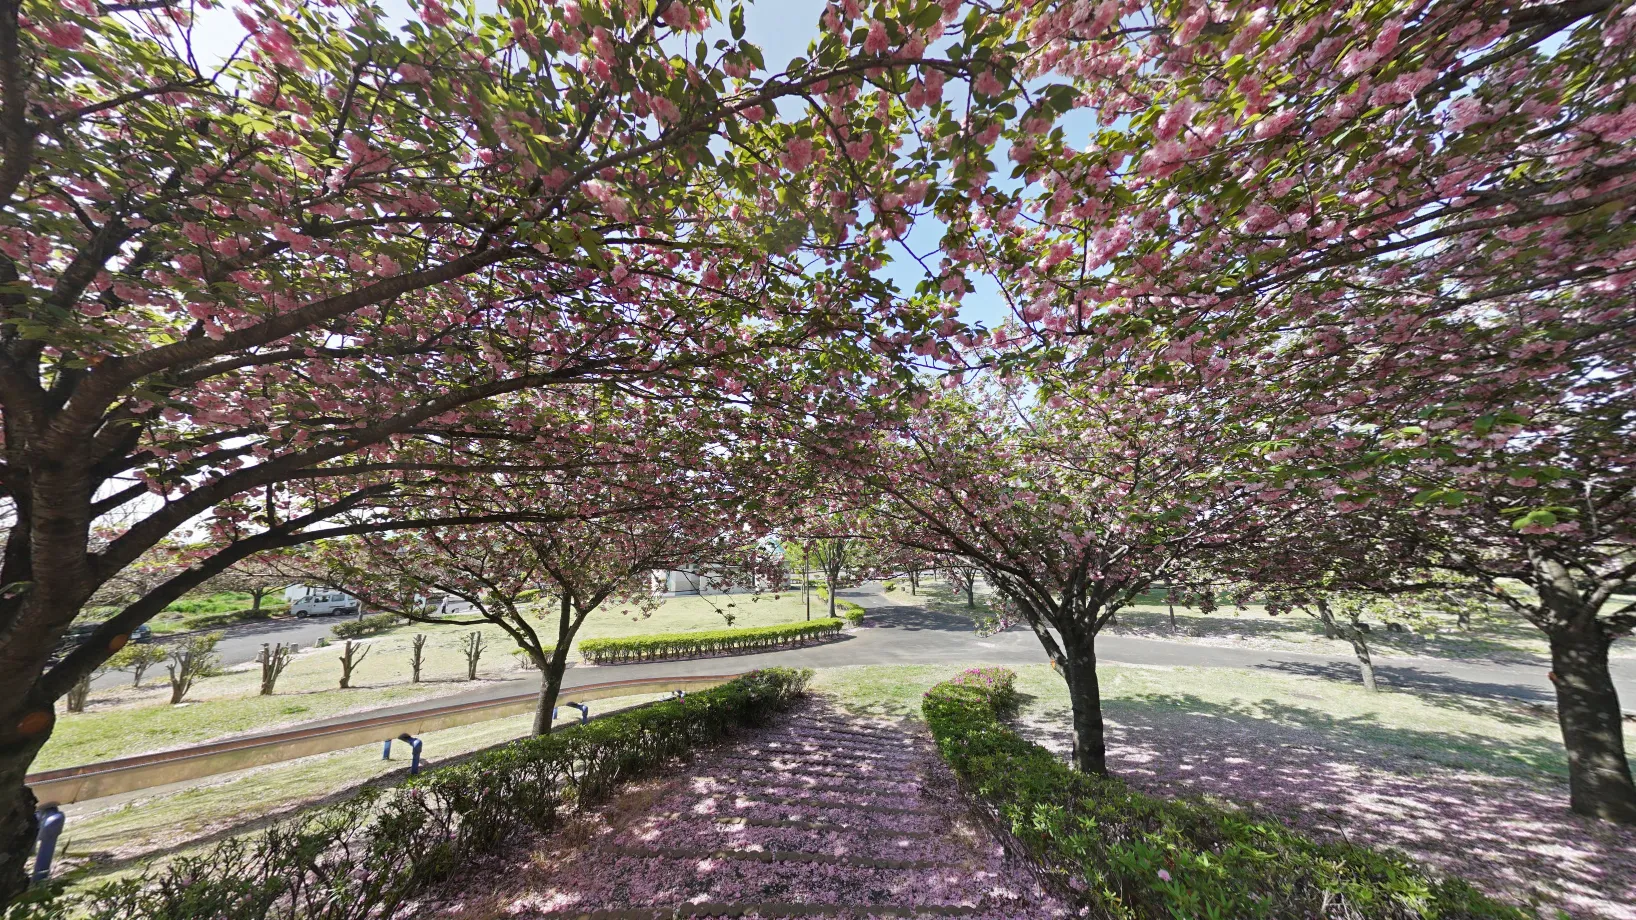 境町のさくらの森パーク展望台前の八重桜景観